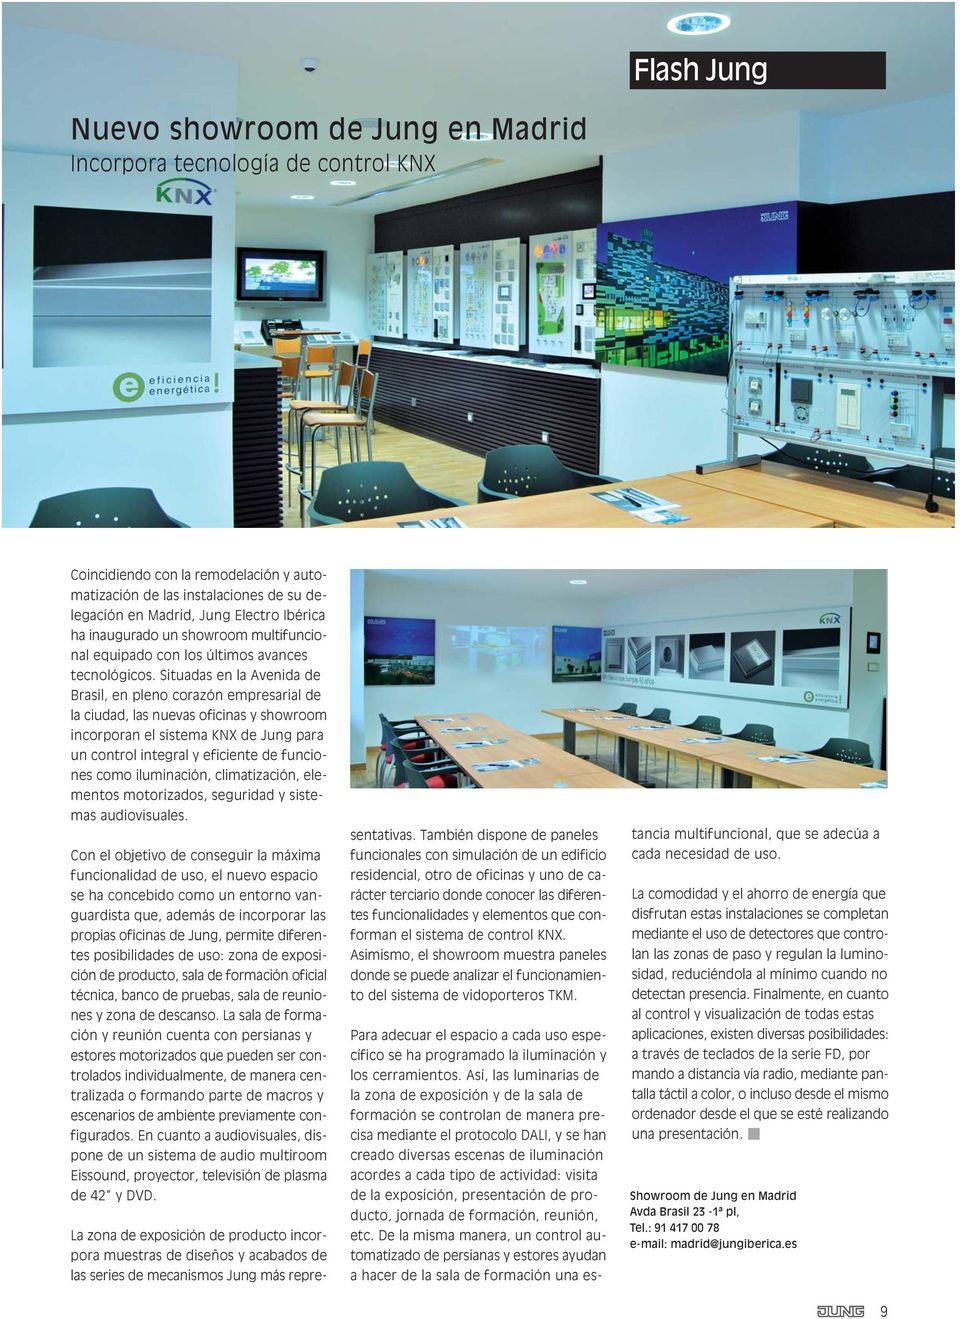 Situadas en la Avenida de Brasil, en pleno corazón empresarial de la ciudad, las nuevas oficinas y showroom incorporan el sistema KNX de Jung para un control integral y eficiente de funciones como